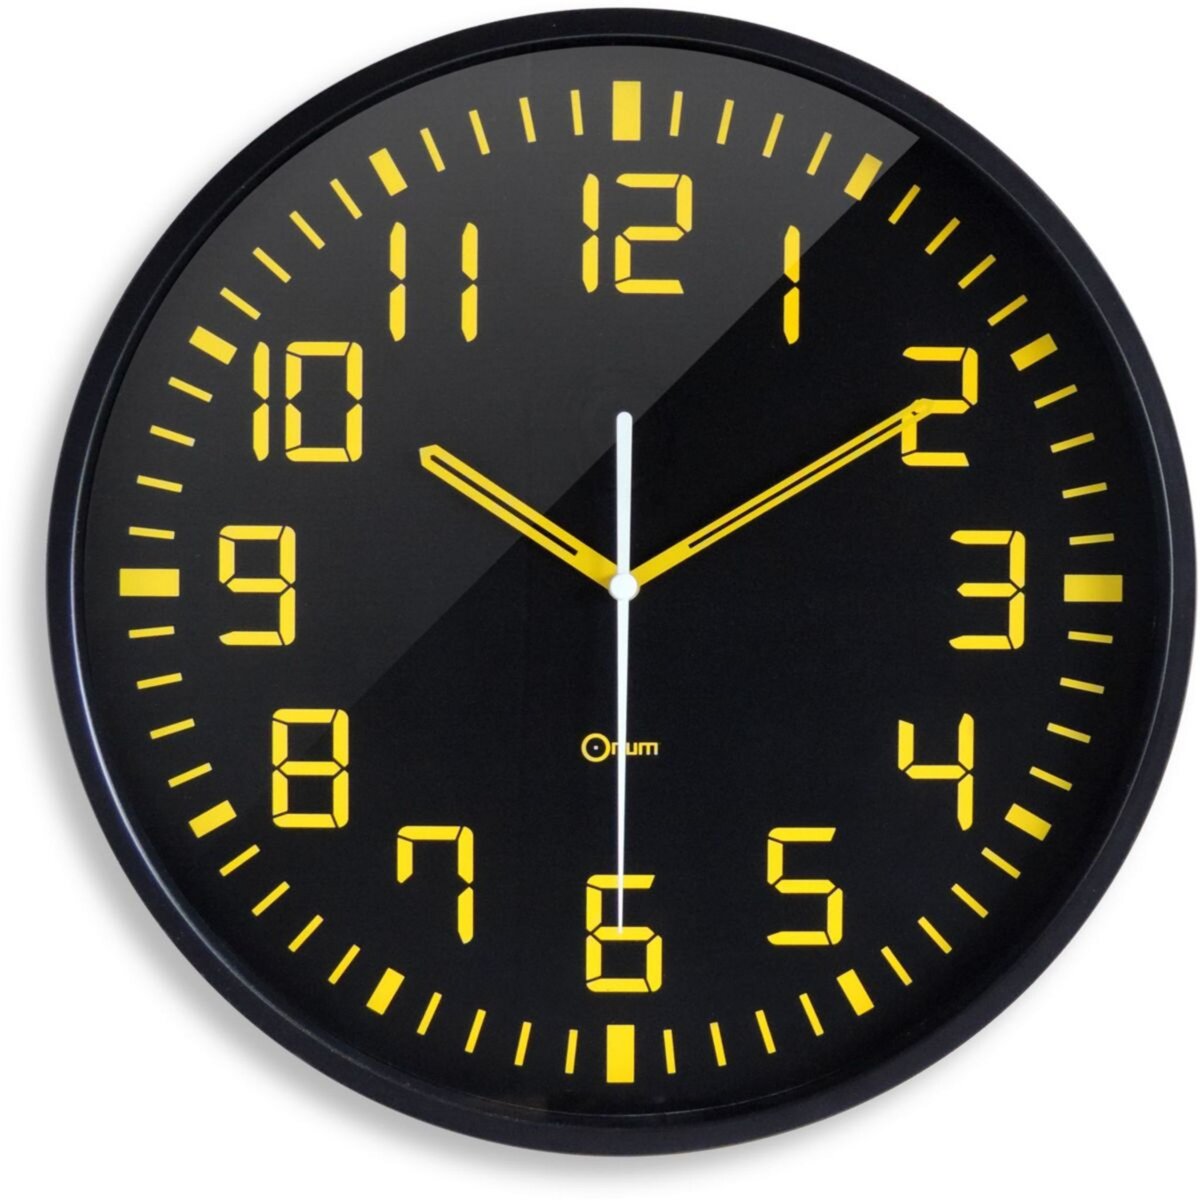 Orium Horloge Horloge silencieuse contraste 30 cm